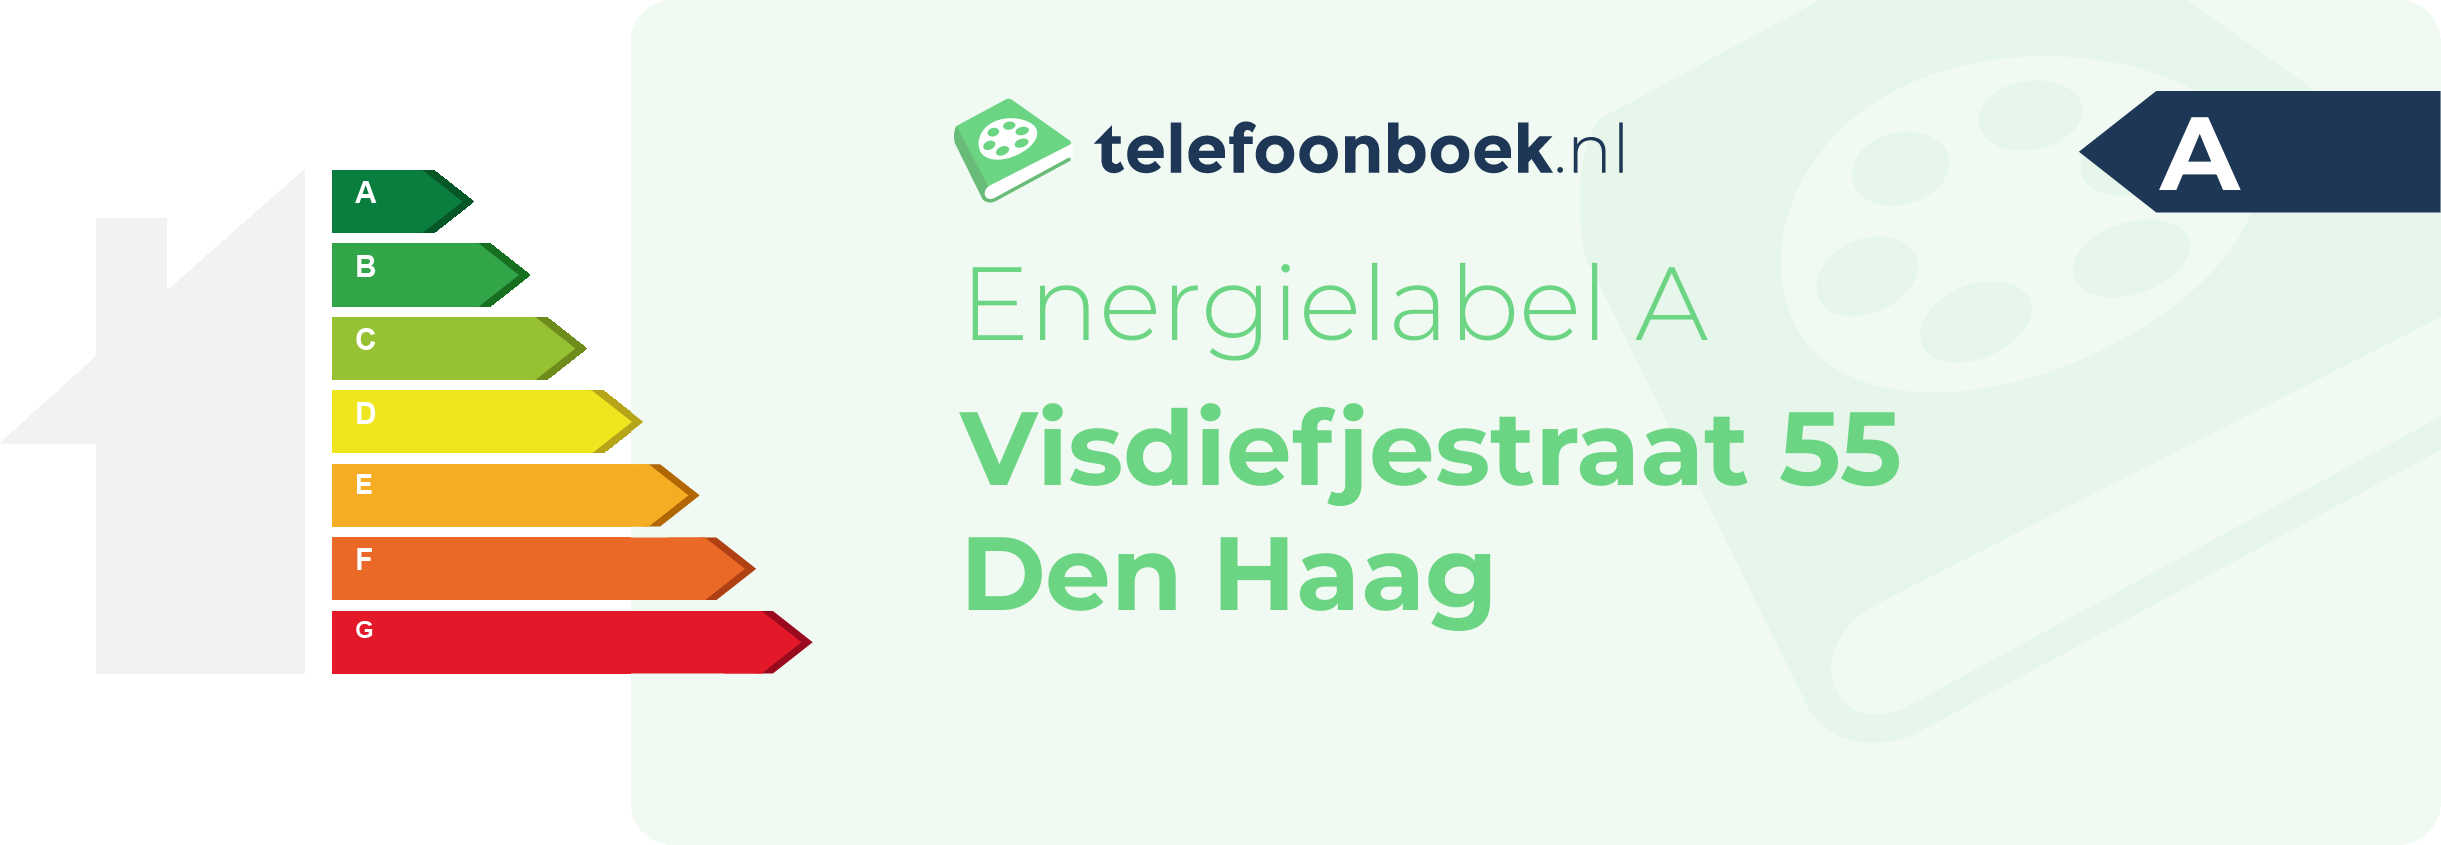 Energielabel Visdiefjestraat 55 Den Haag